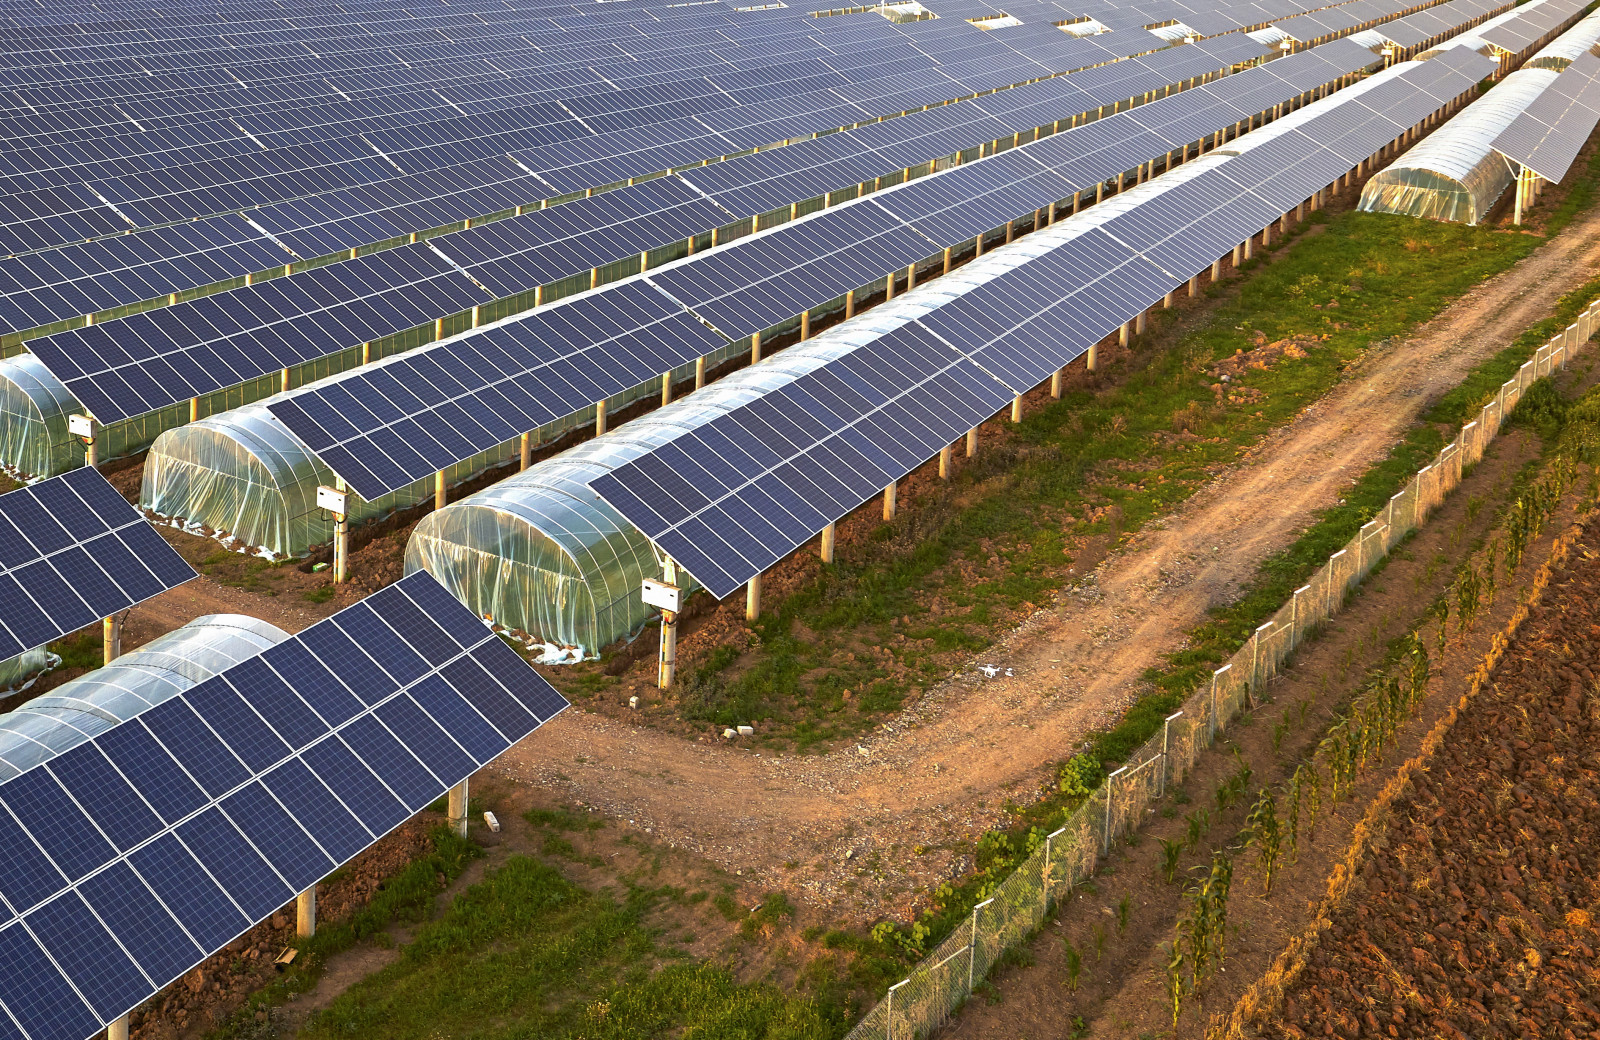 農業における ソーラーシェアリング とは 農業 エネルギー双方の課題解決のための期待 農業とitの未来メディア Smart Agri スマートアグリ